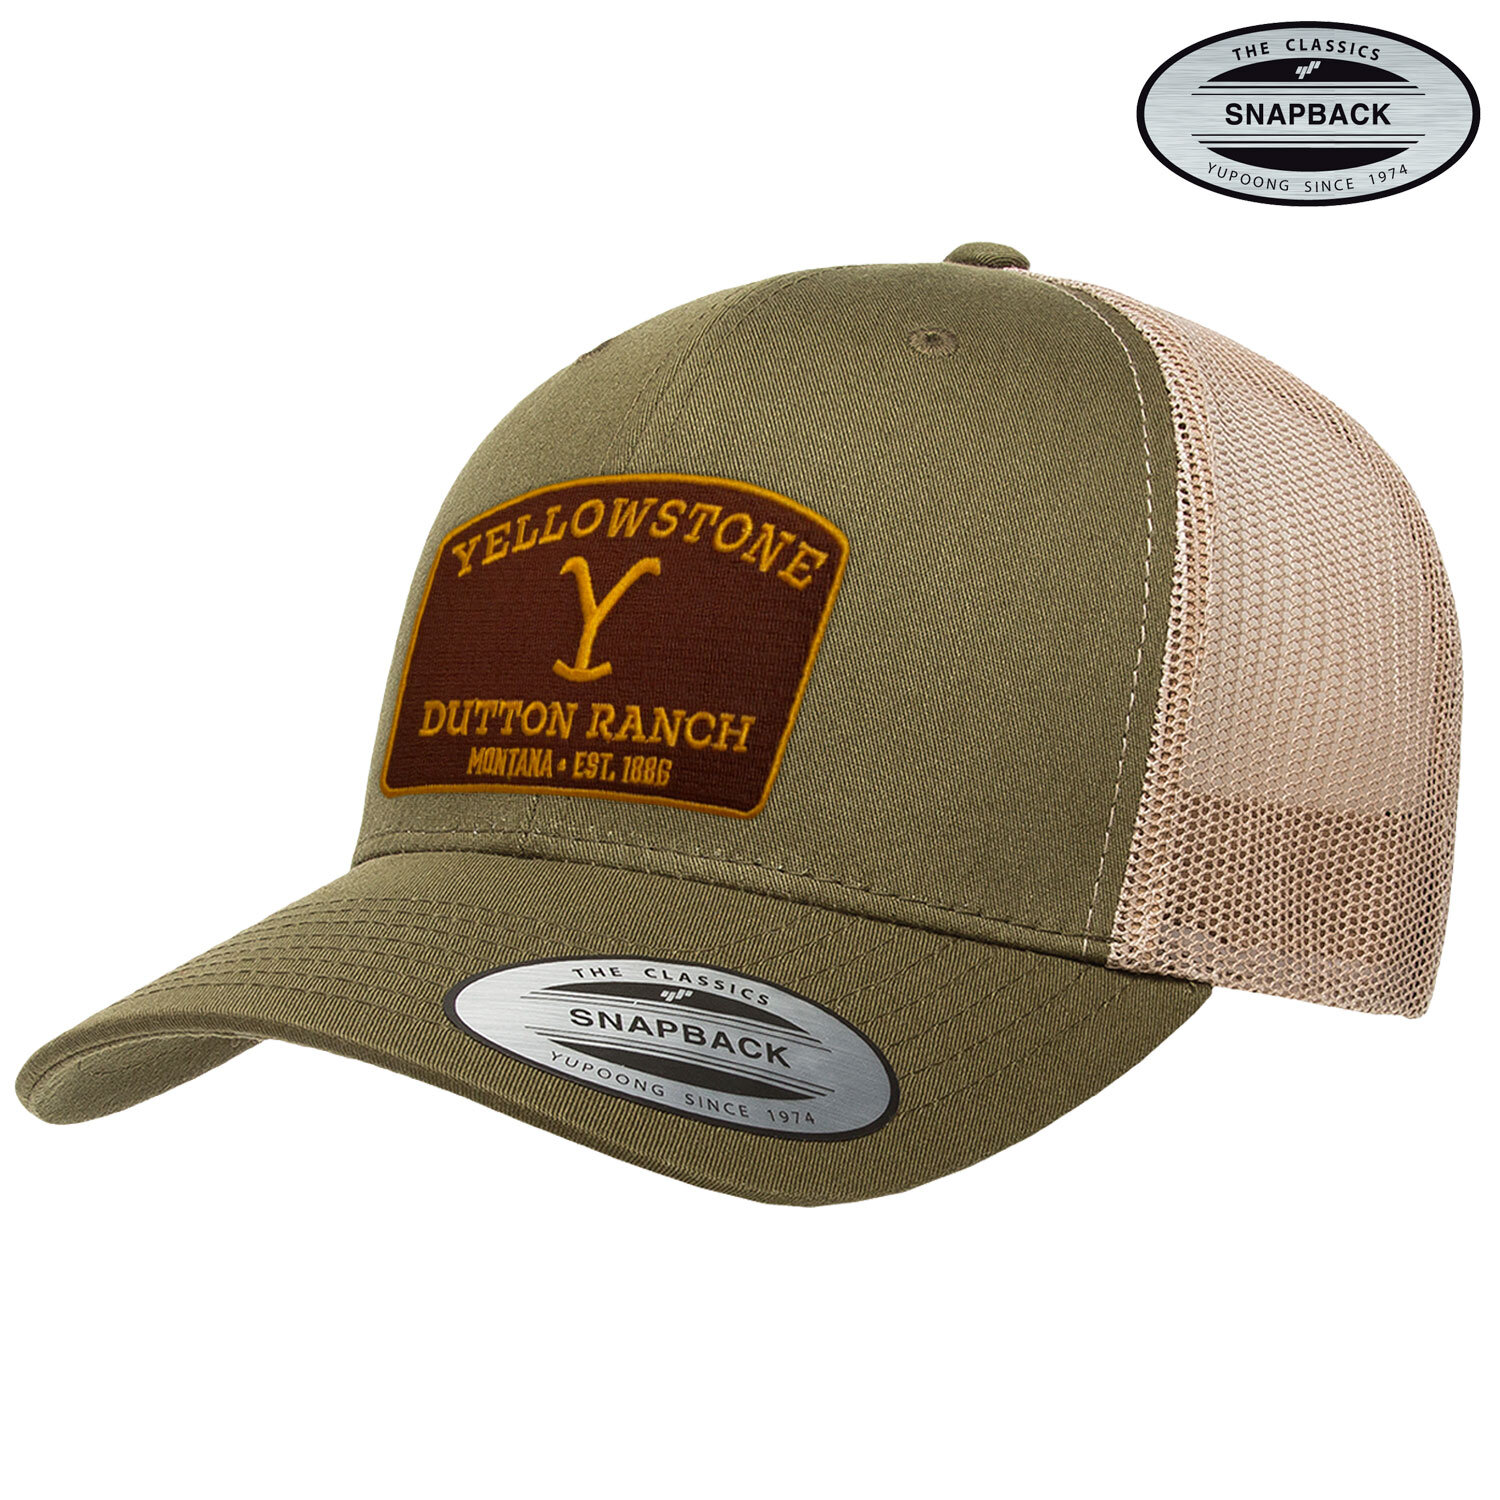 Yellowstone Premium Trucker Cap